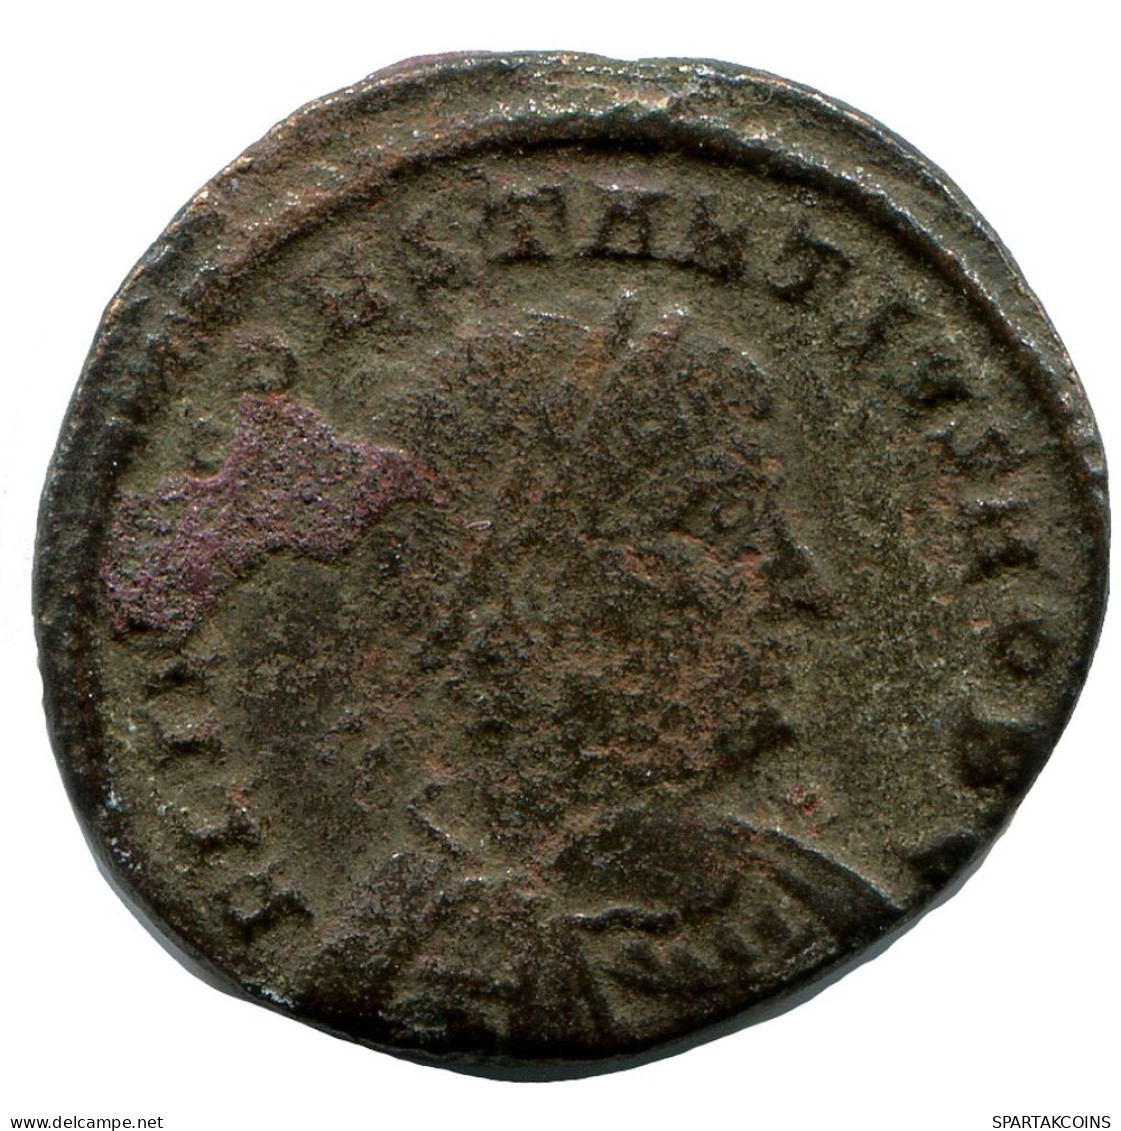 CONSTANTIUS II ALEKSANDRIA FROM THE ROYAL ONTARIO MUSEUM #ANC10478.14.U.A - L'Empire Chrétien (307 à 363)